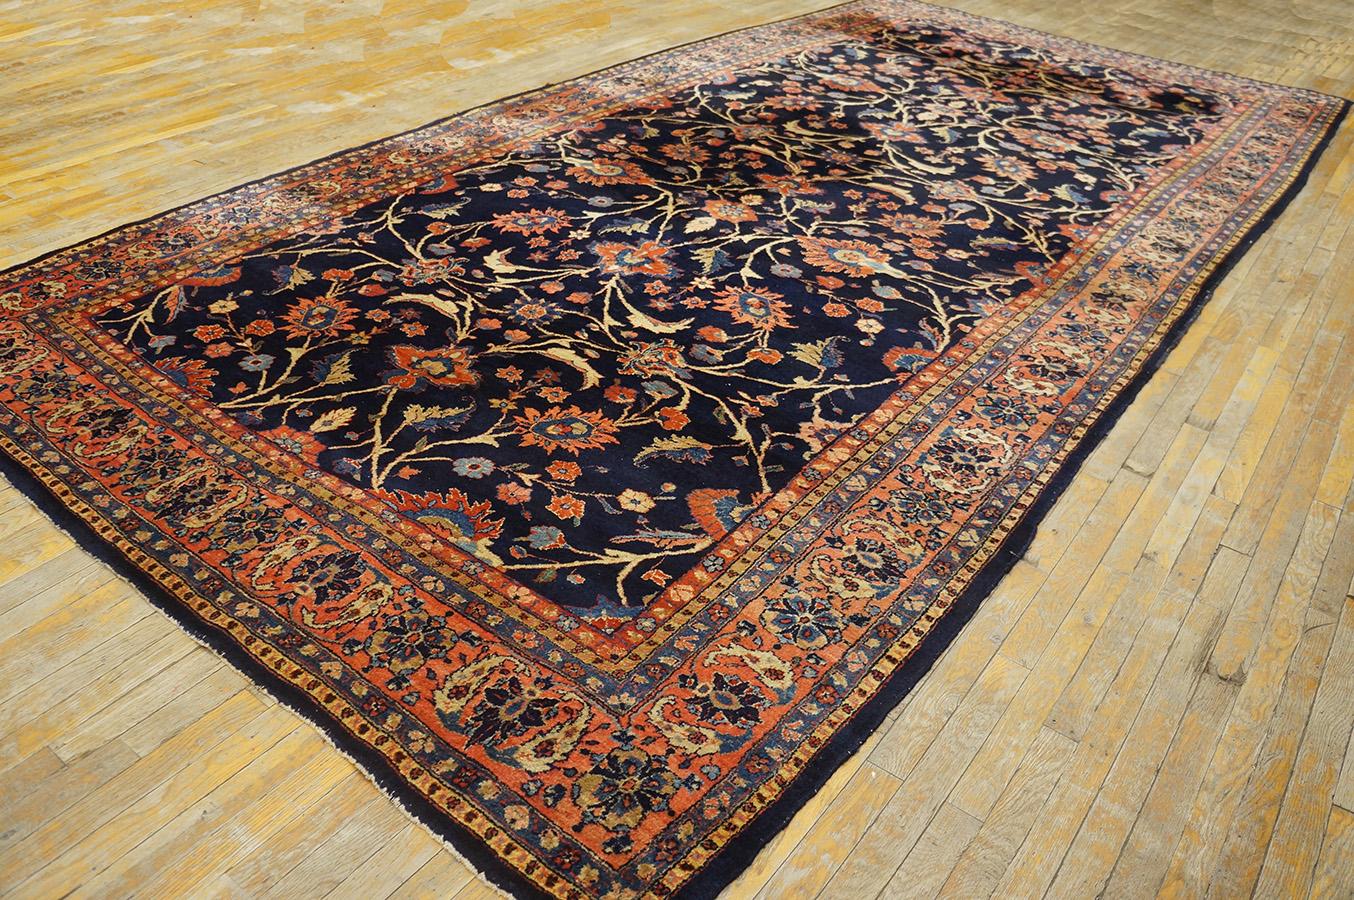 Antique Persian Sarouk rug, size: 7' 6'' x 15' 2''.